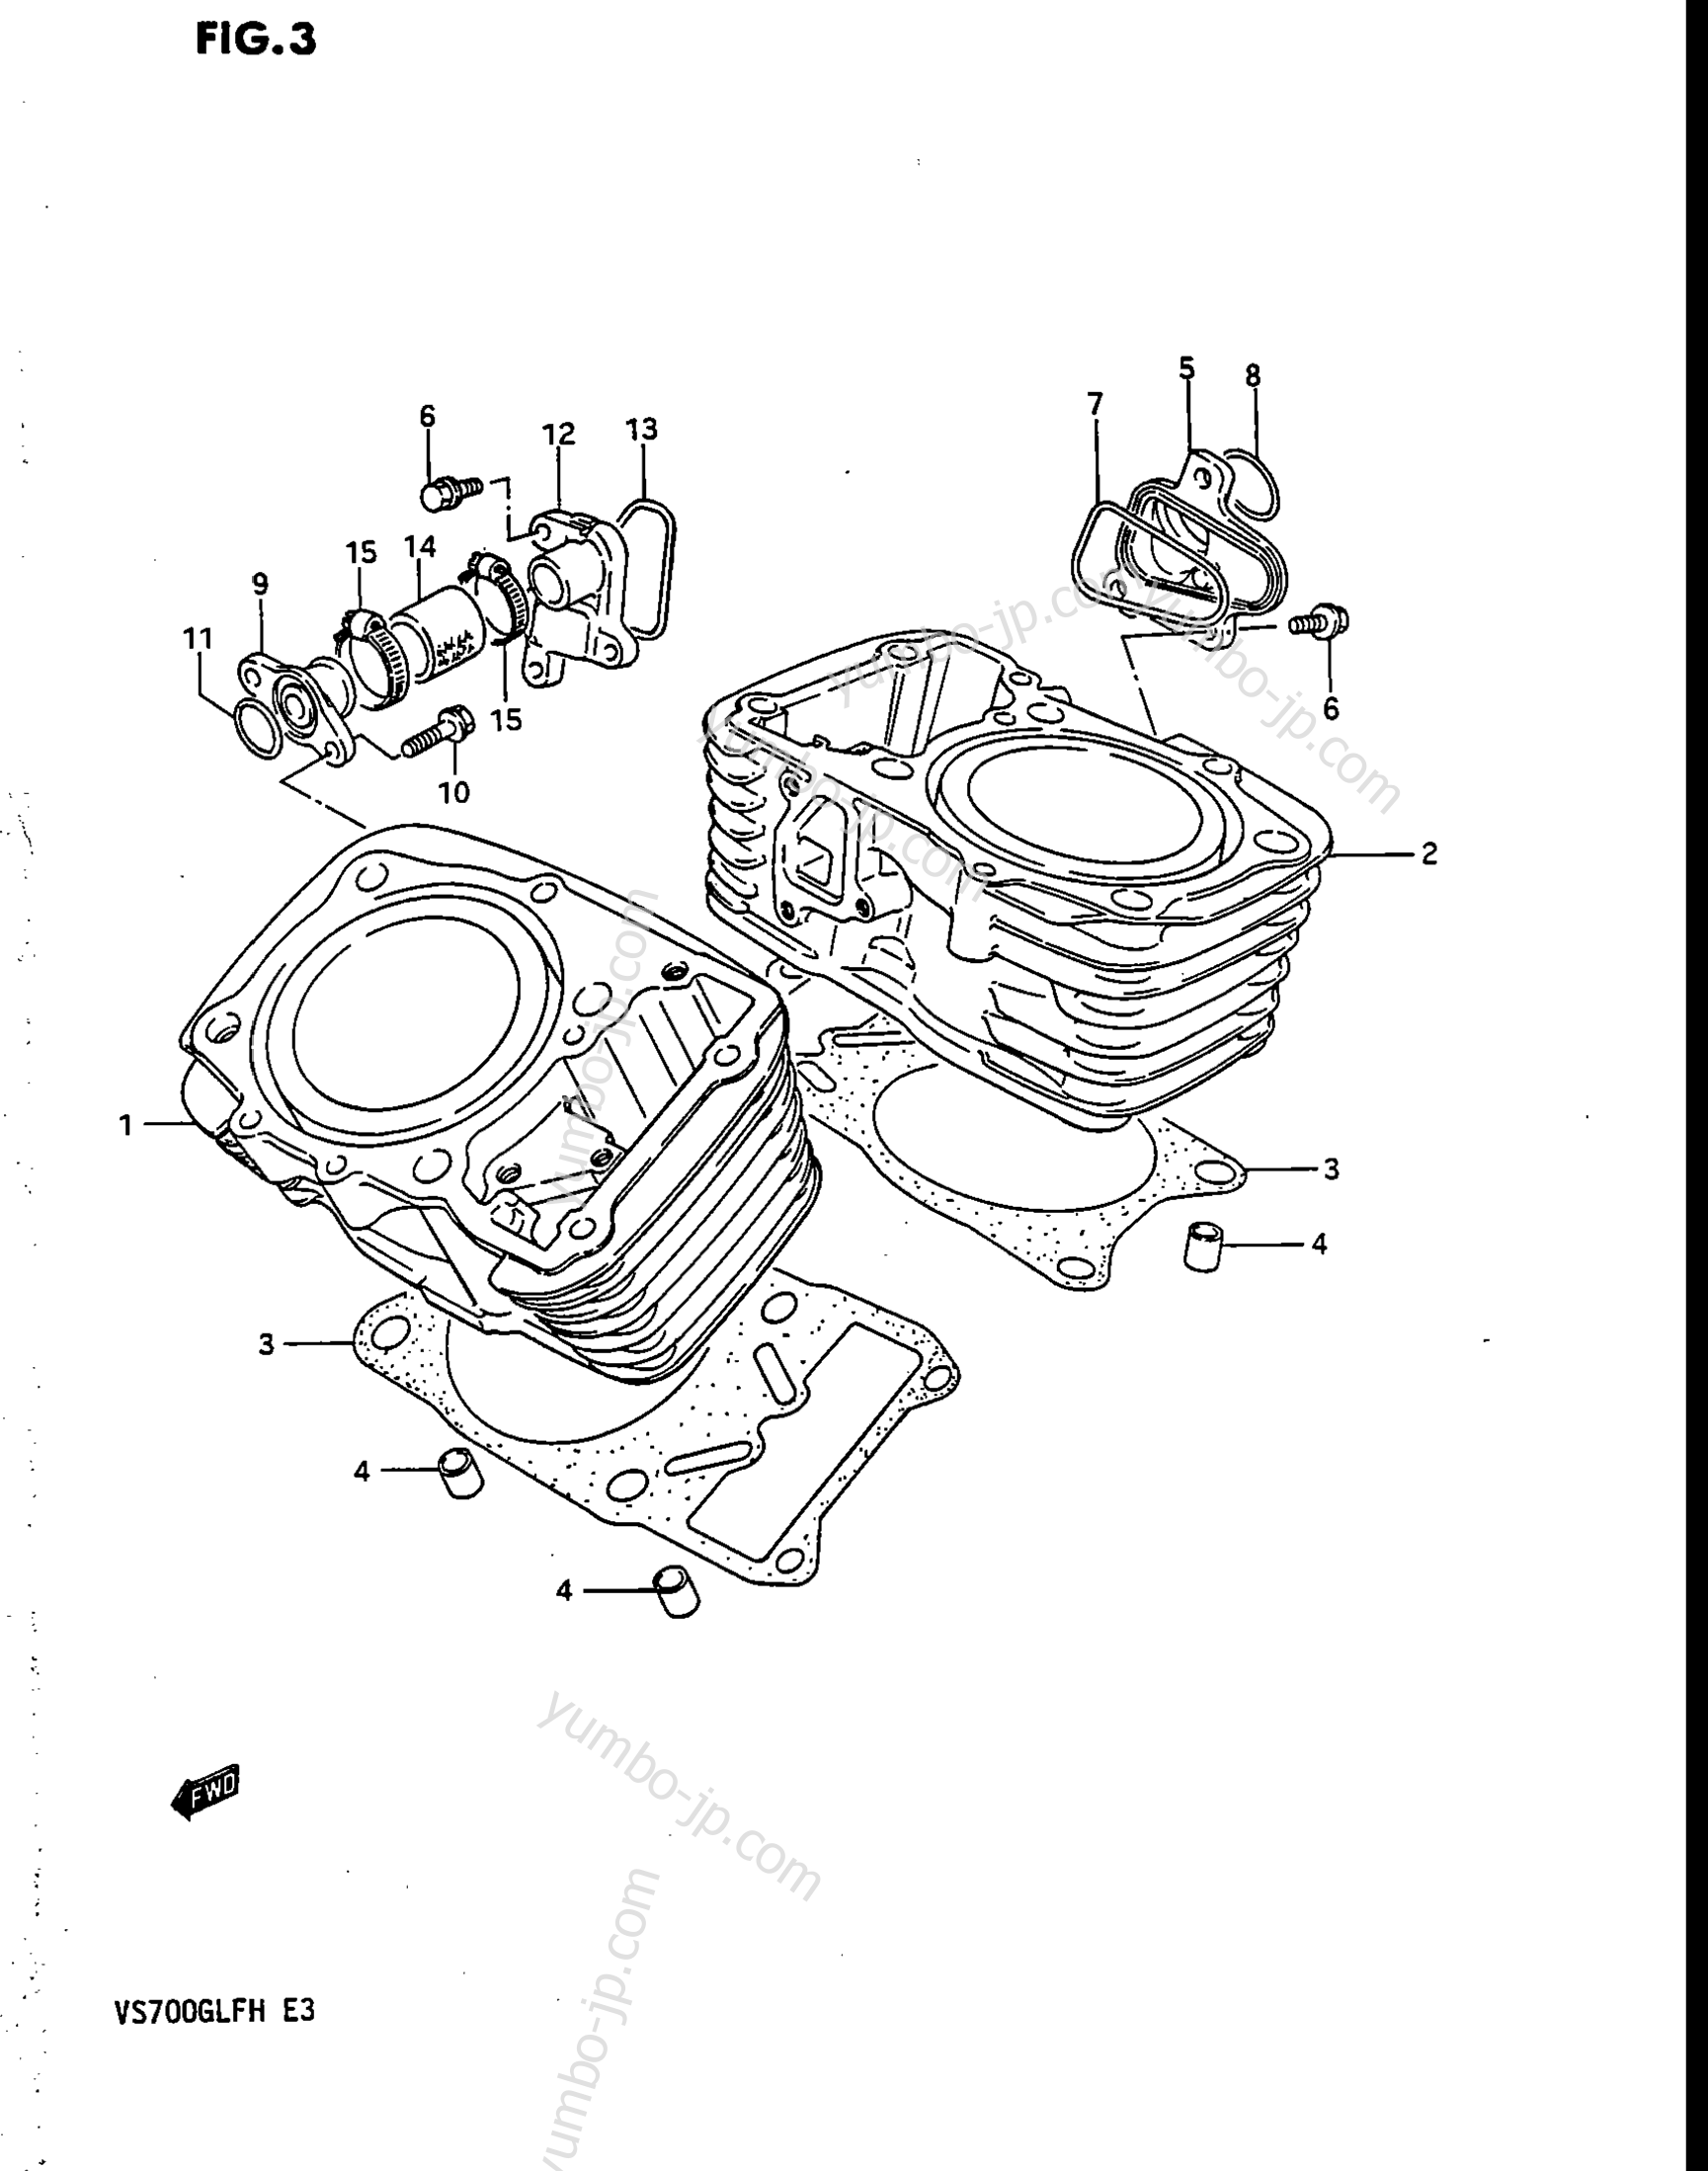 CYLINDER for motorcycles SUZUKI Intruder (VS700GLP) 1986 year